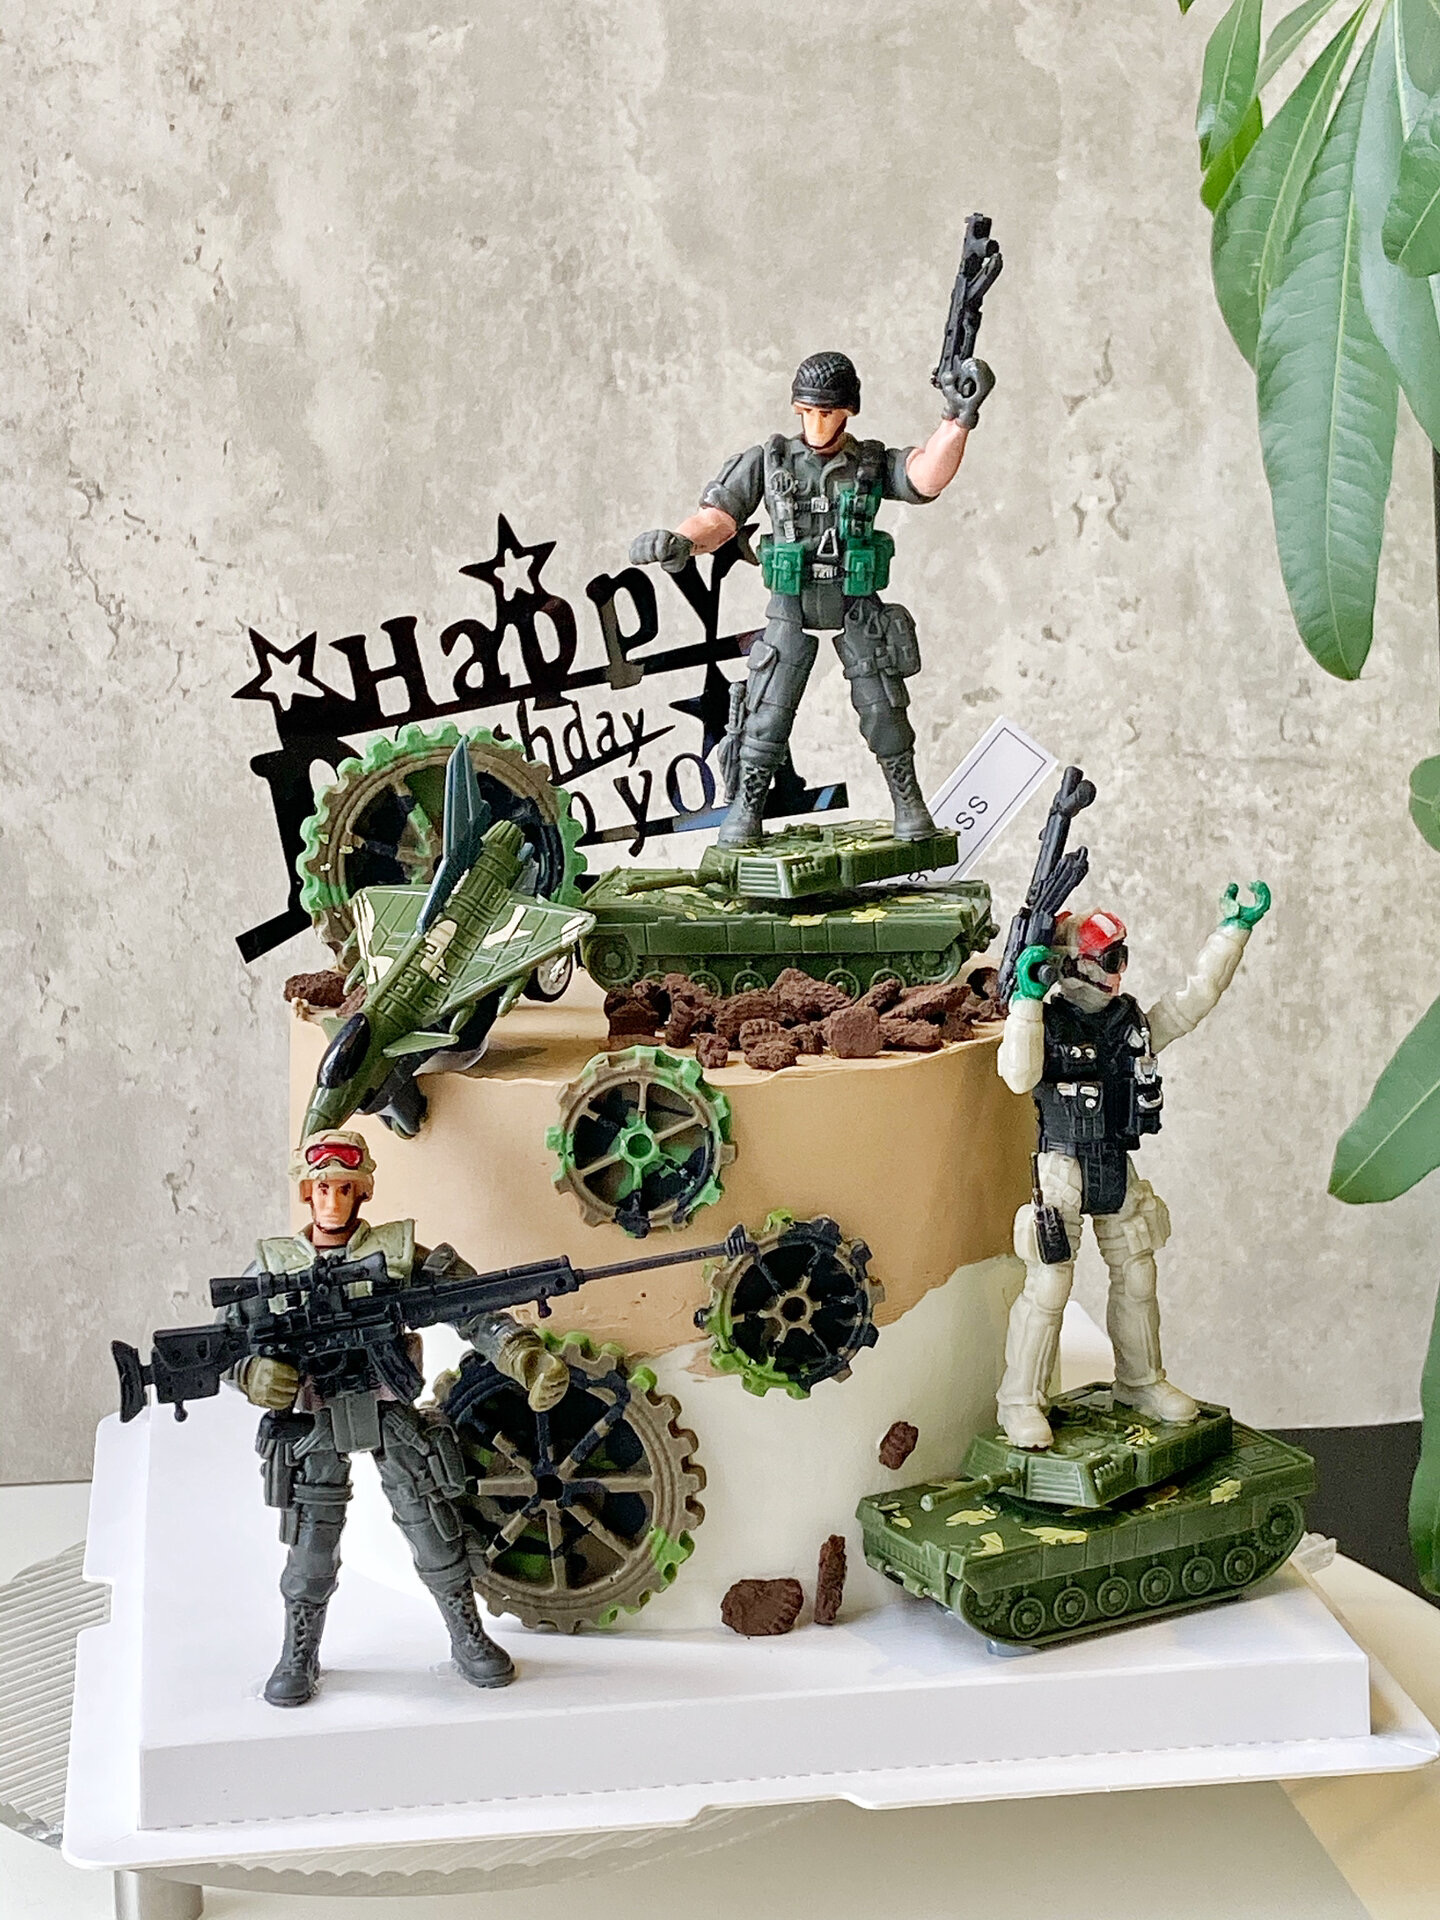 网红军事特种兵主题蛋糕装饰摆件坦克火箭炮导弹生日蛋糕插件插牌